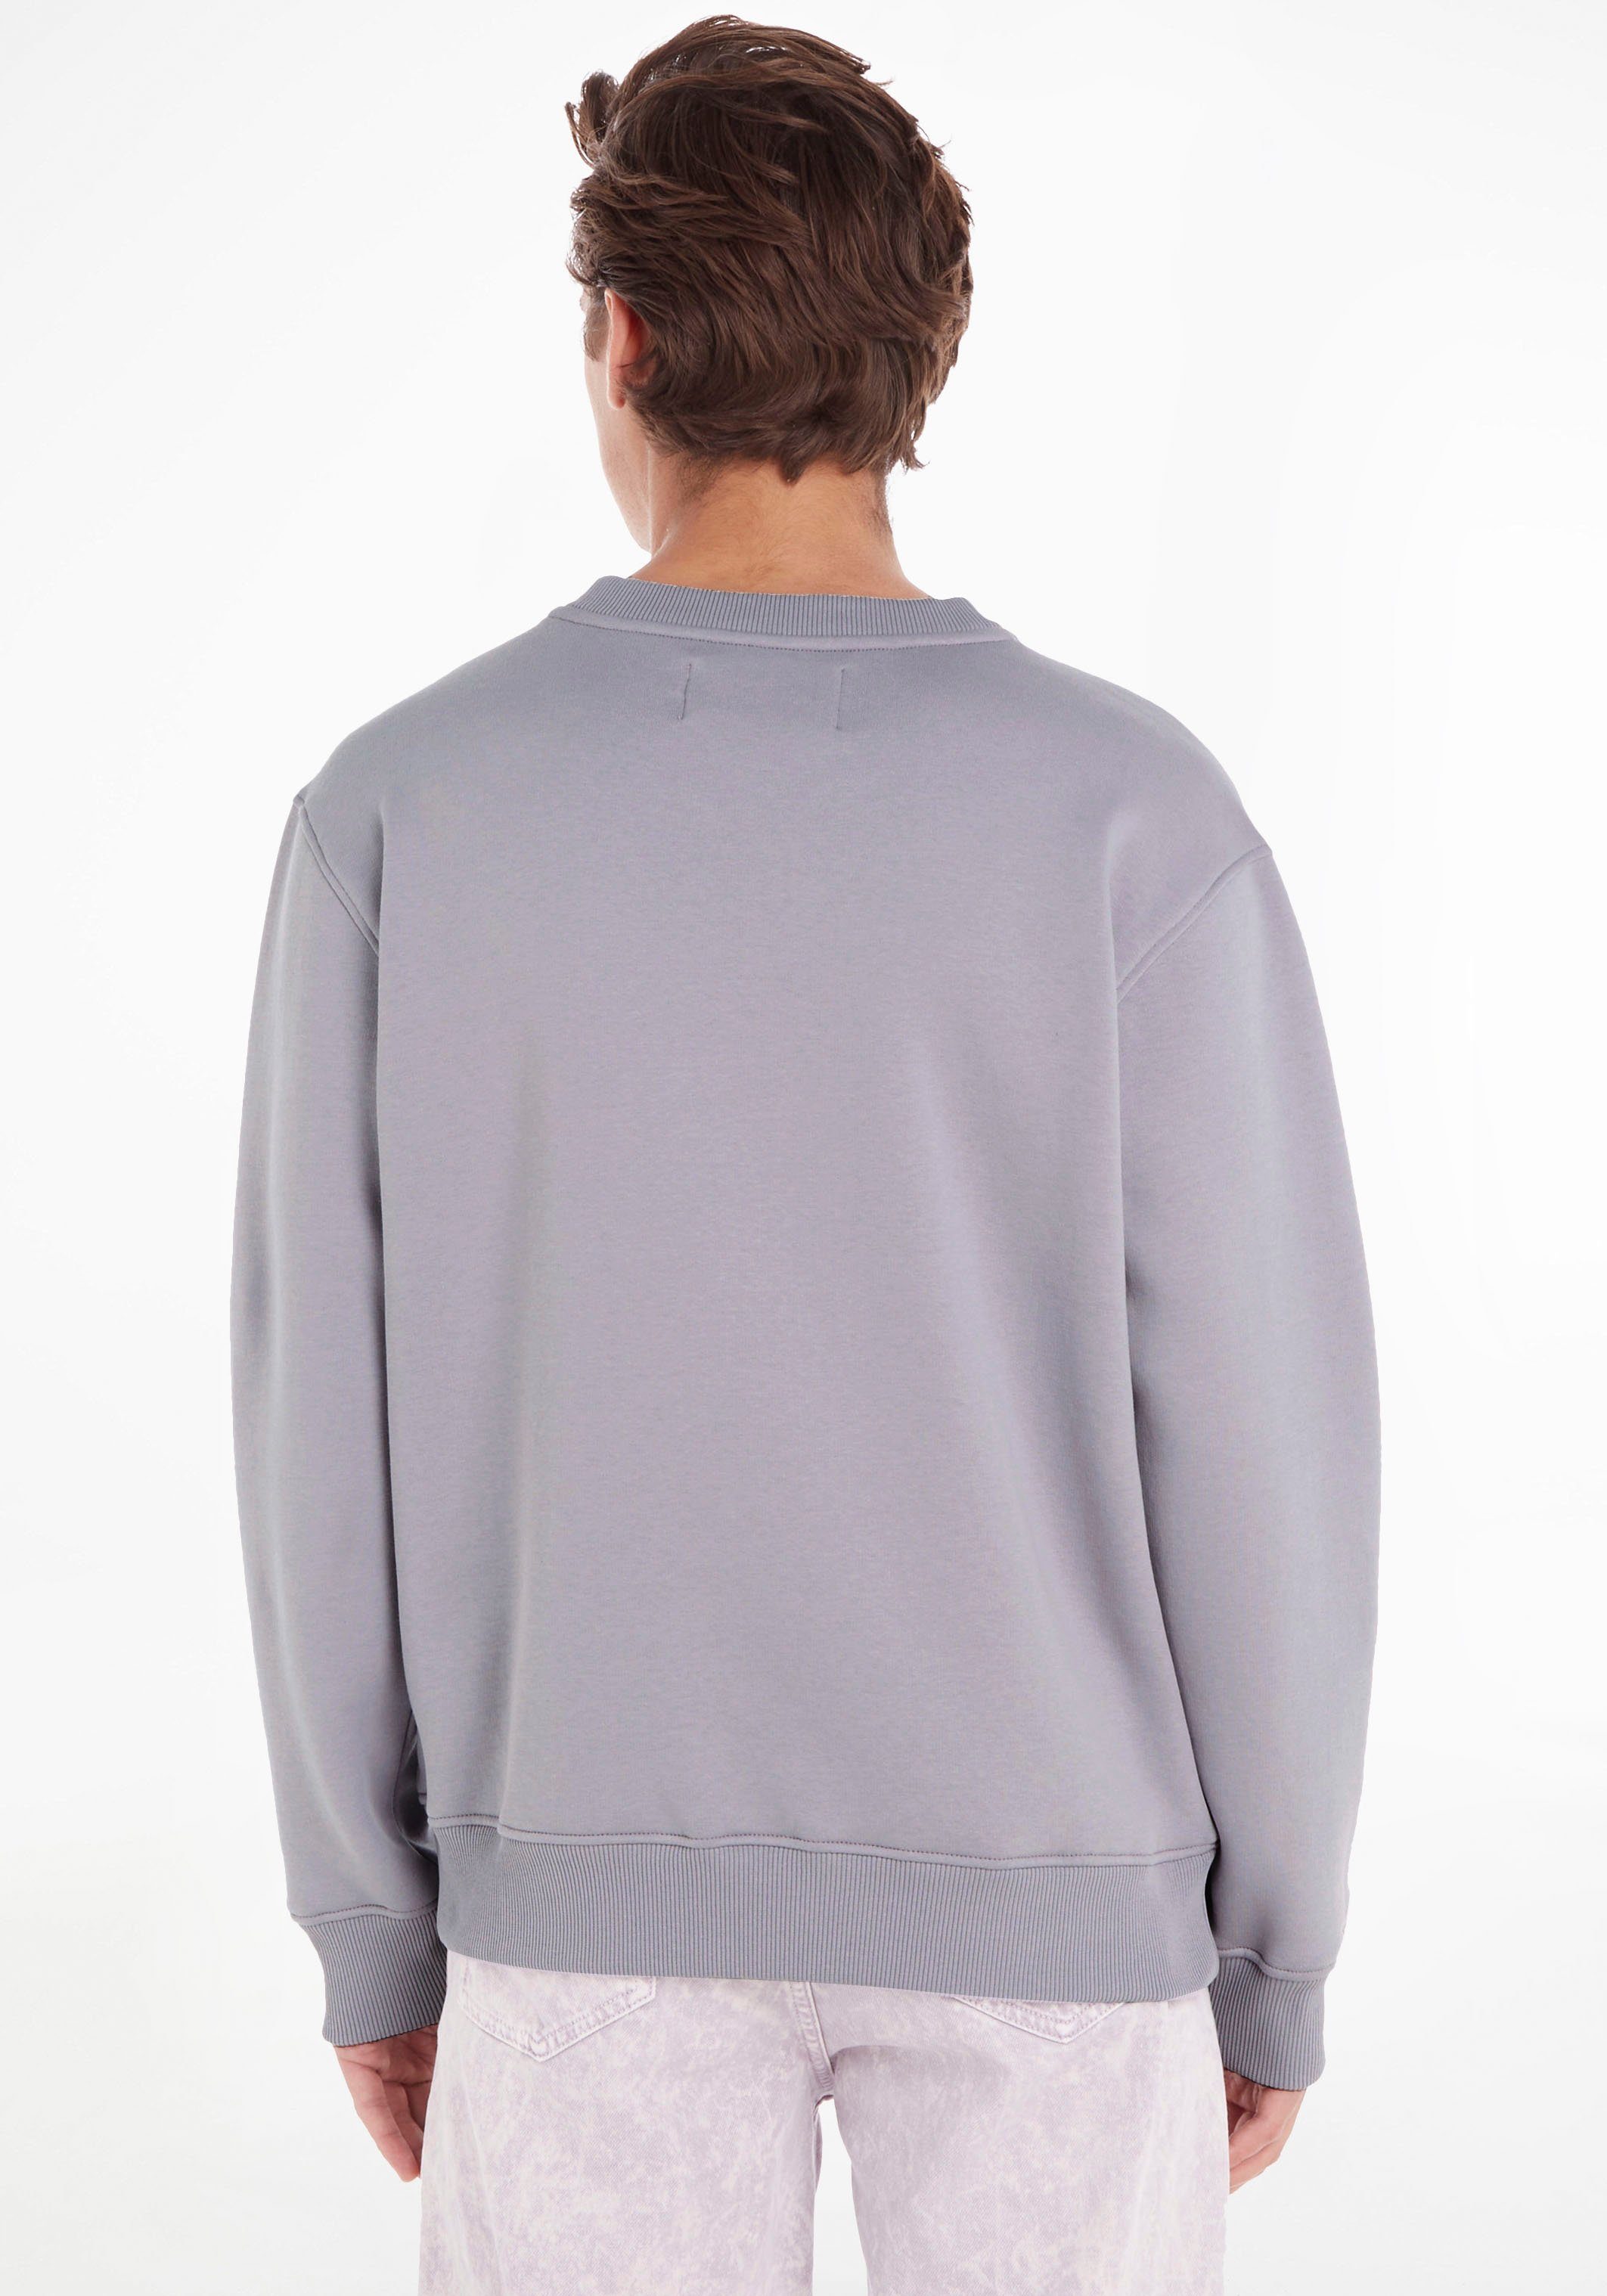 Calvin Klein Jeans Aura Sweatshirt CREW NECK MONOLOGO Lavender